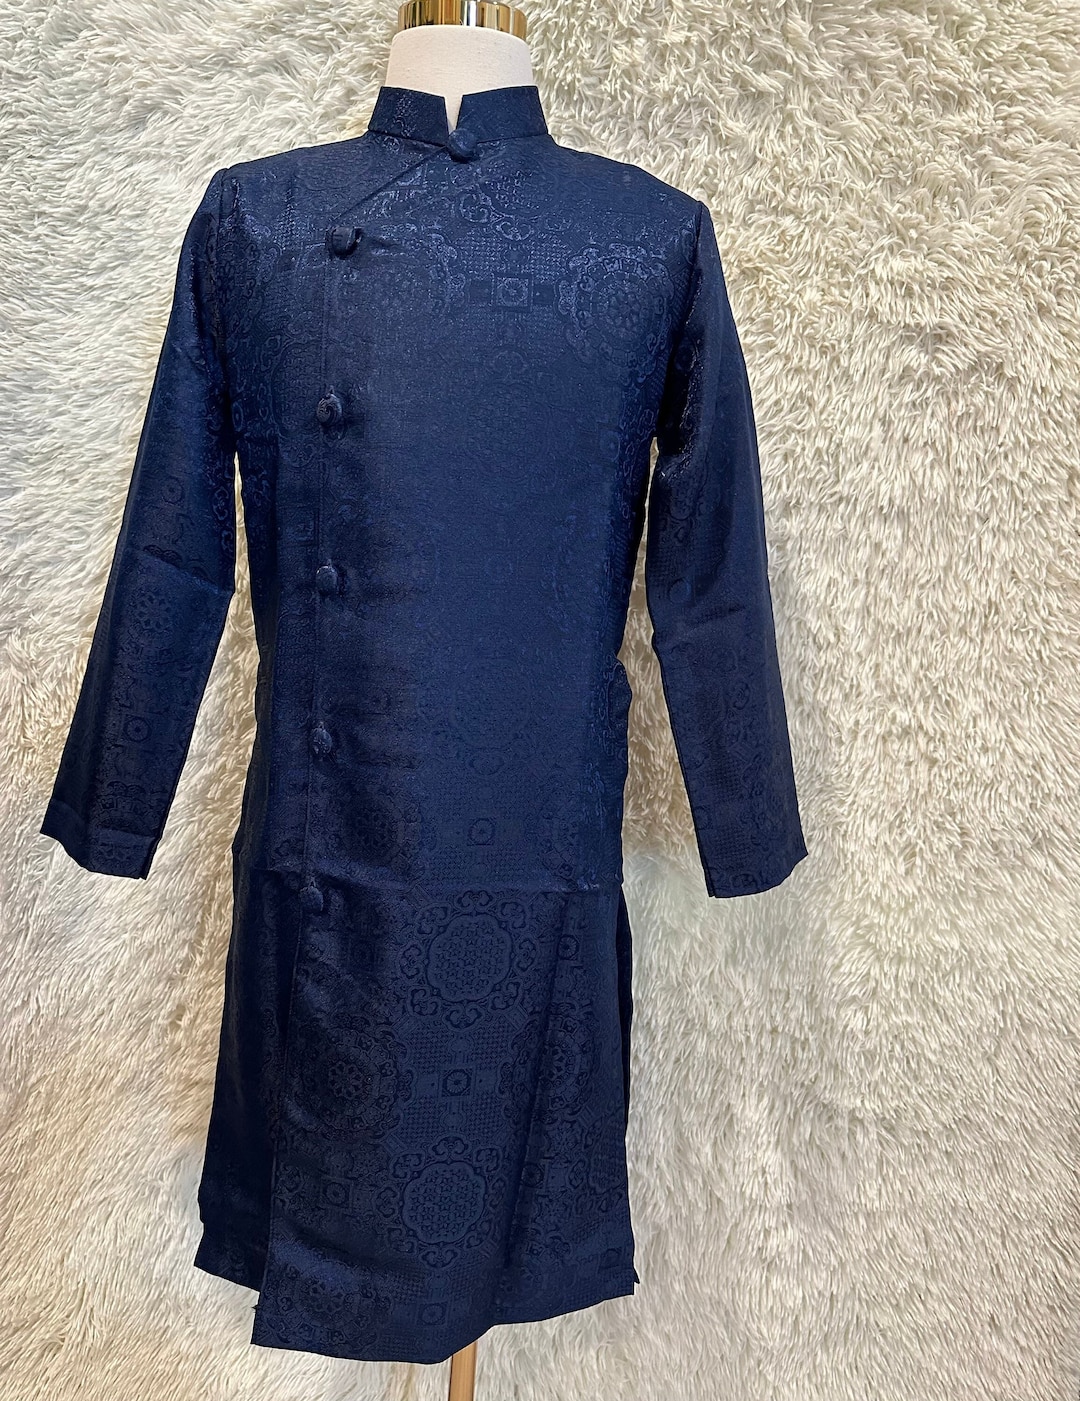 Dark Blue Ao Dai for Men Vietnamese Gam Long Dress for Men - Etsy